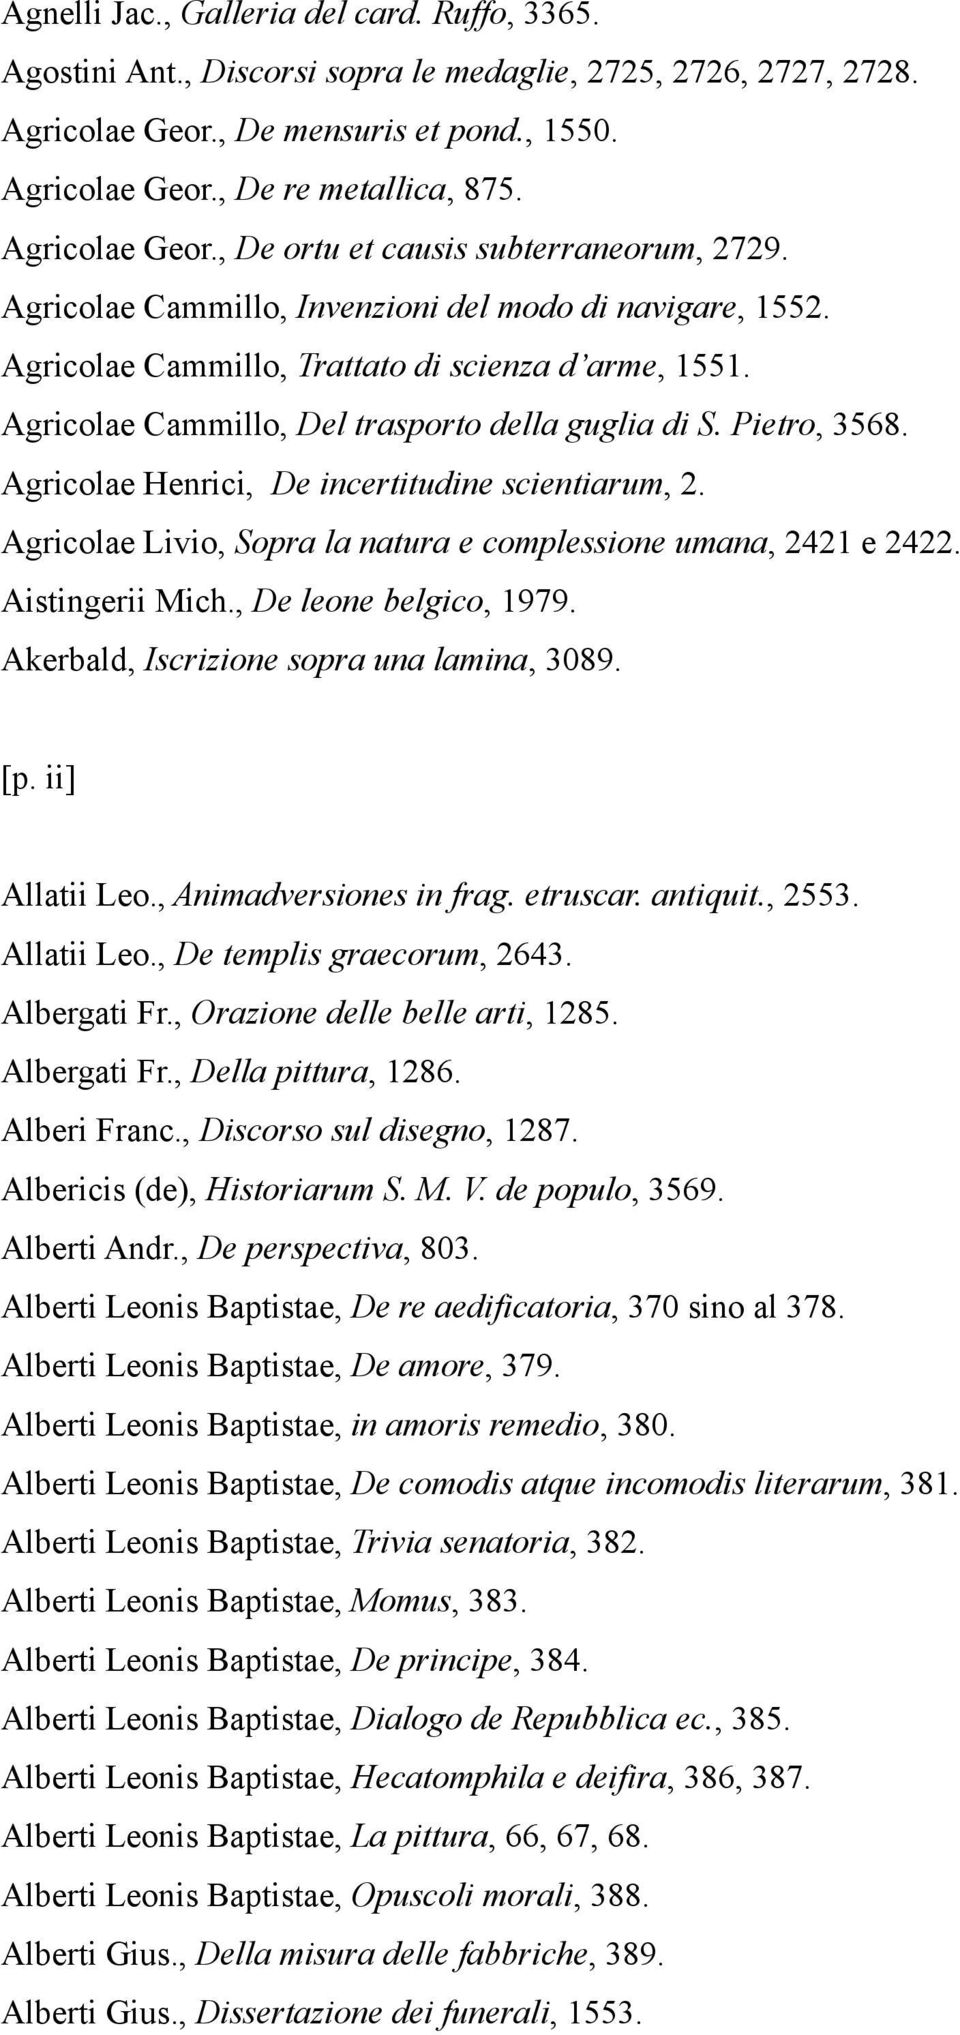 Agricolae Cammillo, Del trasporto della guglia di S. Pietro, 3568. Agricolae Henrici, De incertitudine scientiarum, 2. Agricolae Livio, Sopra la natura e complessione umana, 2421 e 2422.